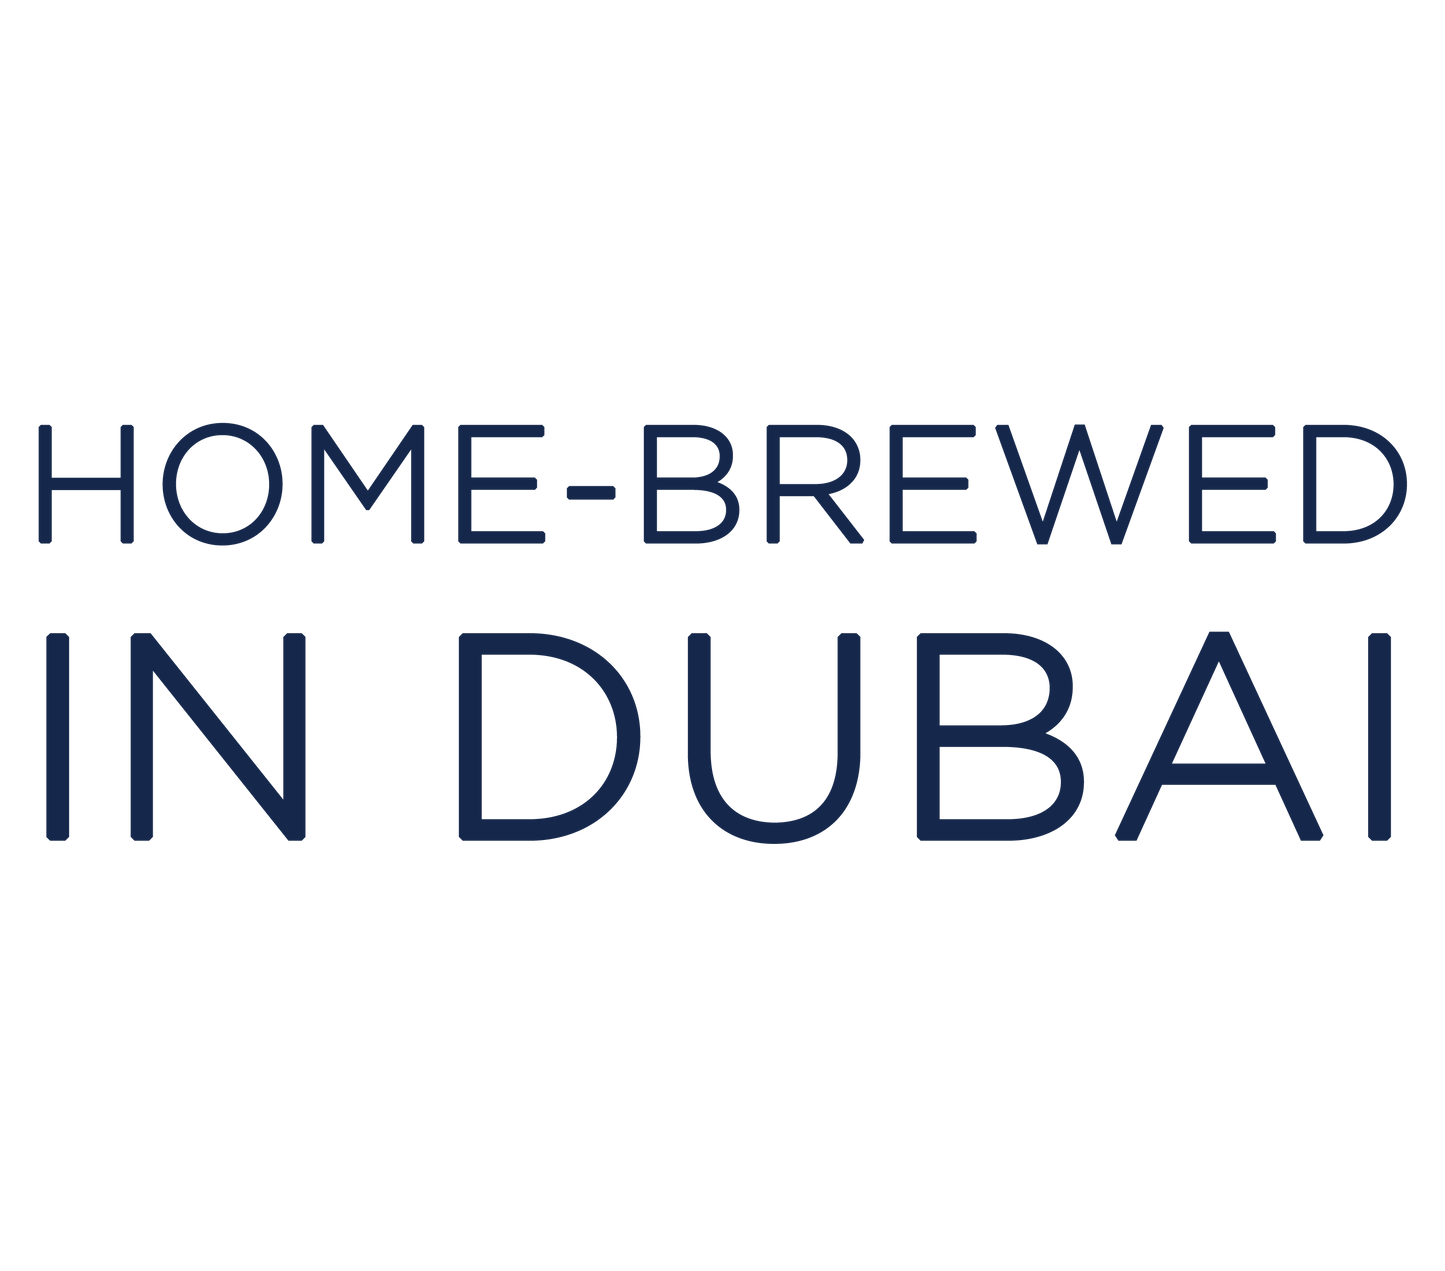 HOME BREWED IN DUBAI t-shirt